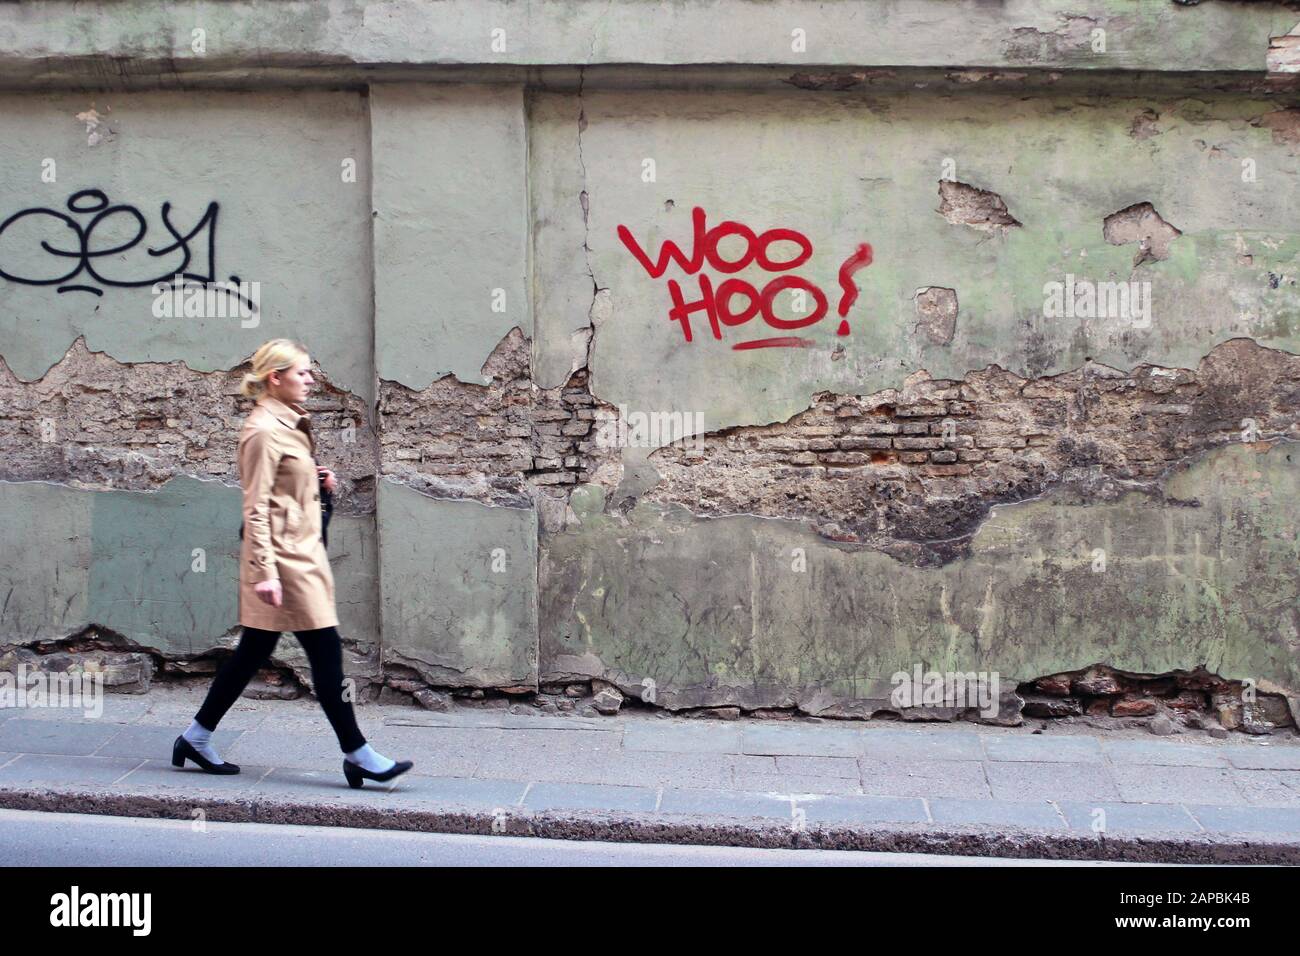 Une jeune femme qui se promenait dans la rue à Vilnius, en Lituanie, alors que la caméra est centrée sur le texte rouge sur le mur vert Banque D'Images